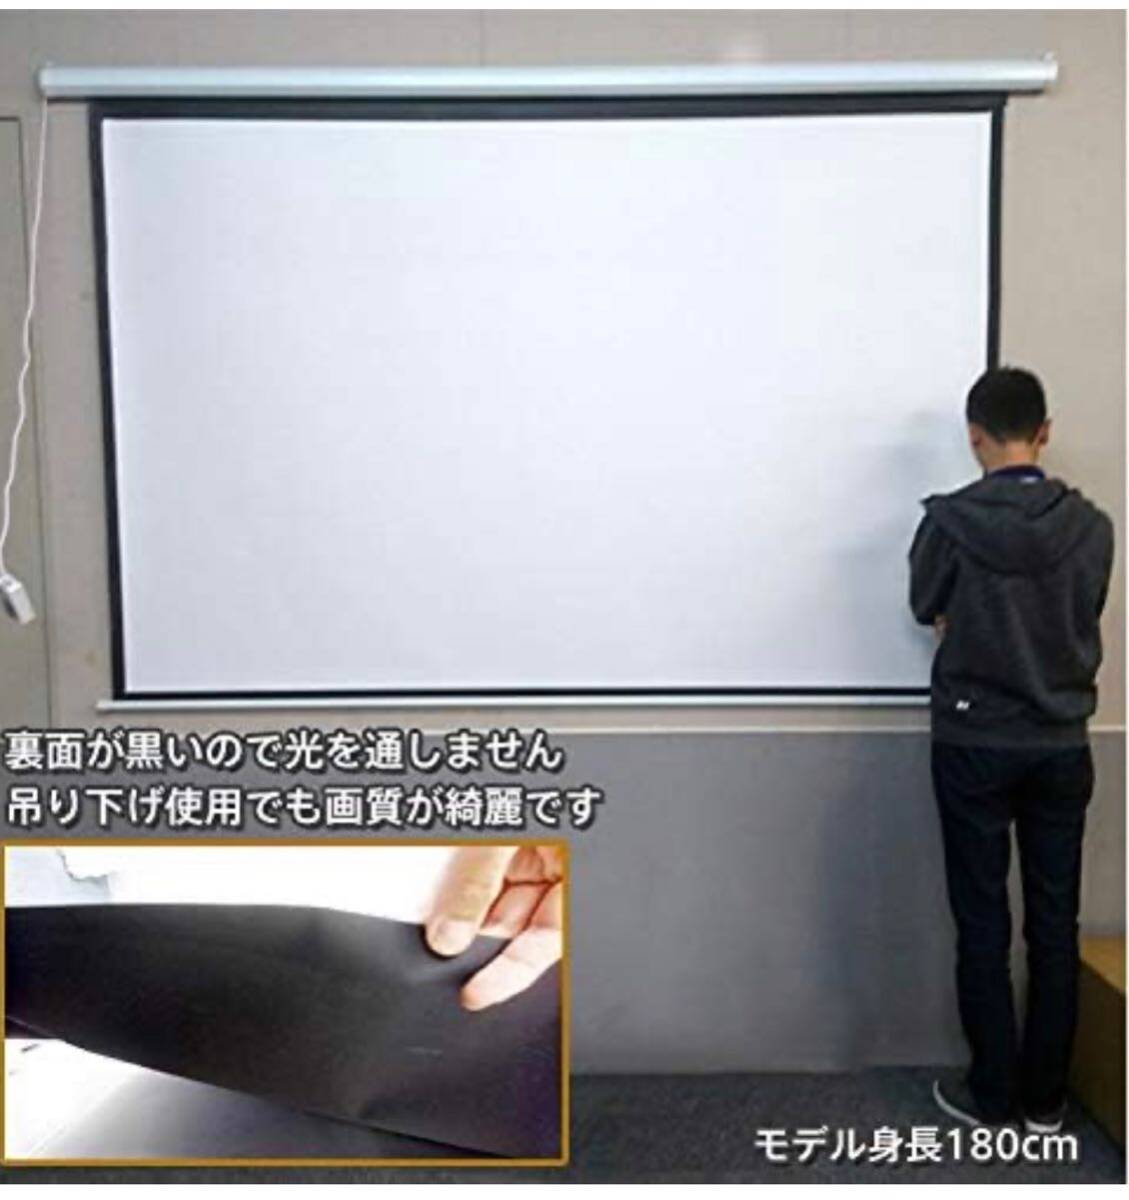  проектор экран подвешивание ниже тип 100 дюймовый 16:9 б/у 